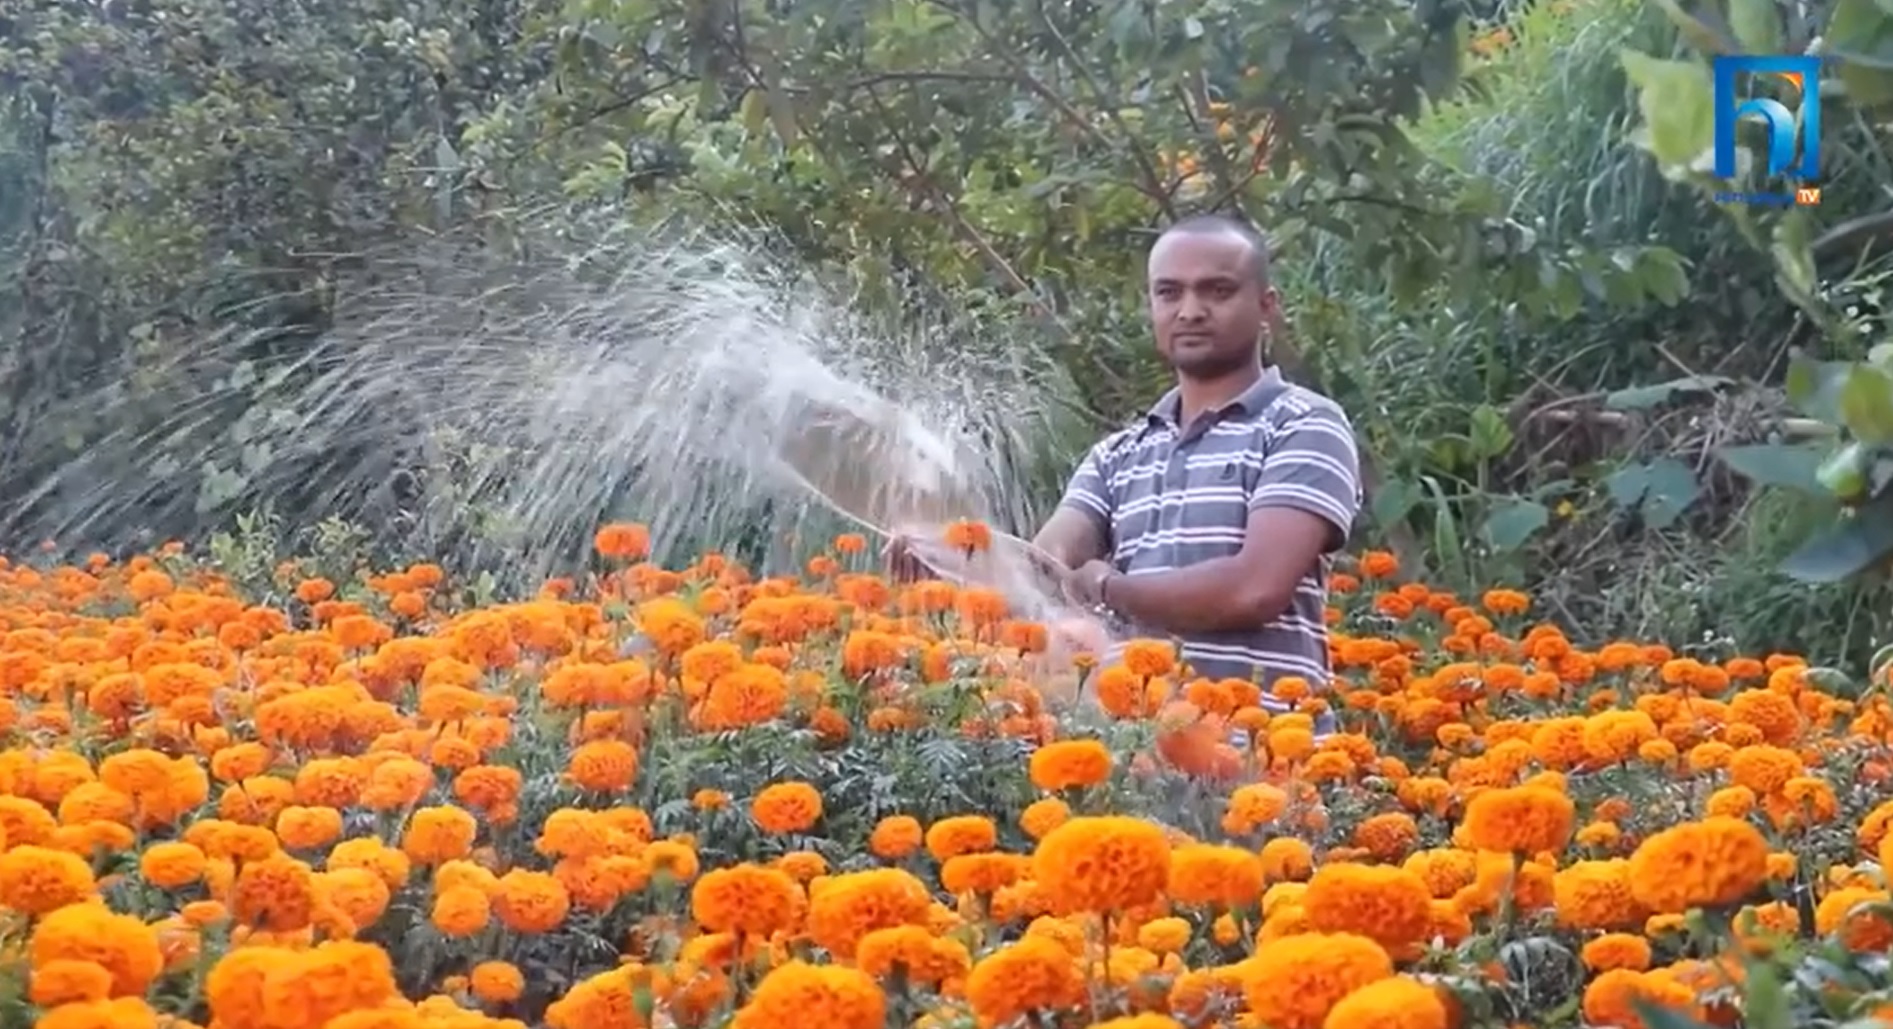 फूलमा यसरी आत्मनिर्भर बन्दै धनकुटा (भिडियो रिपोर्टसहित)